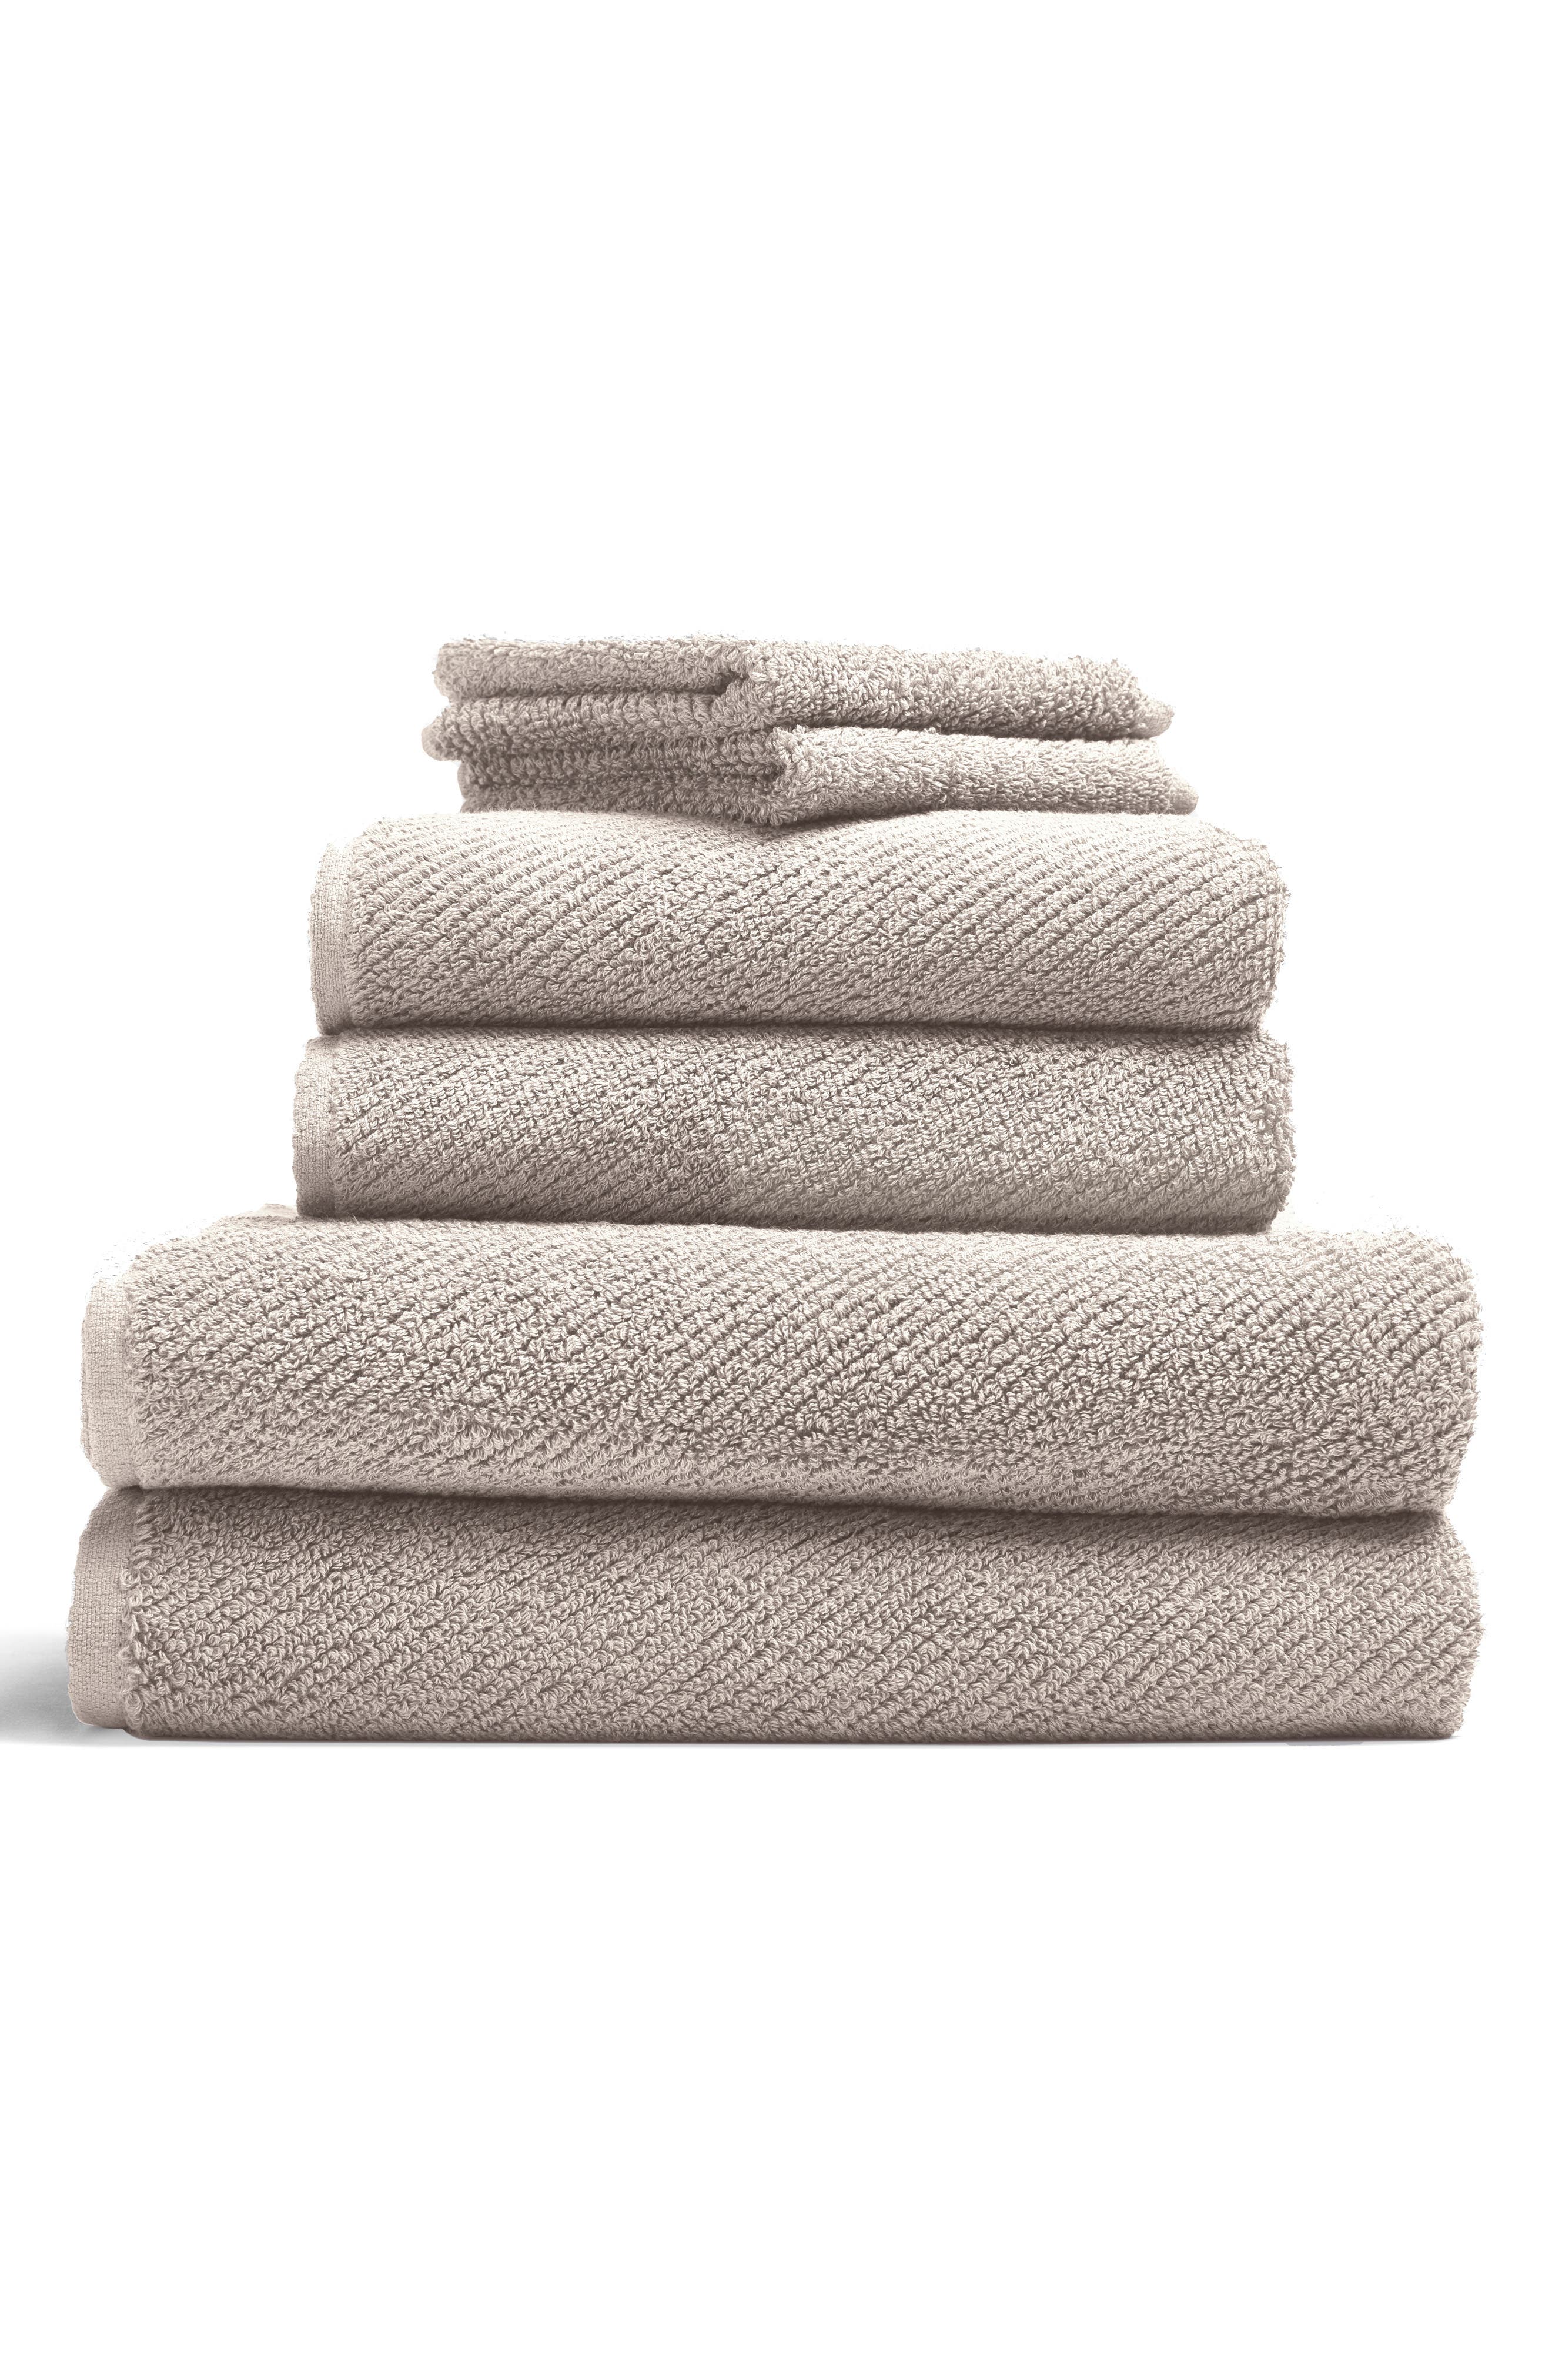 gucci bath towel set